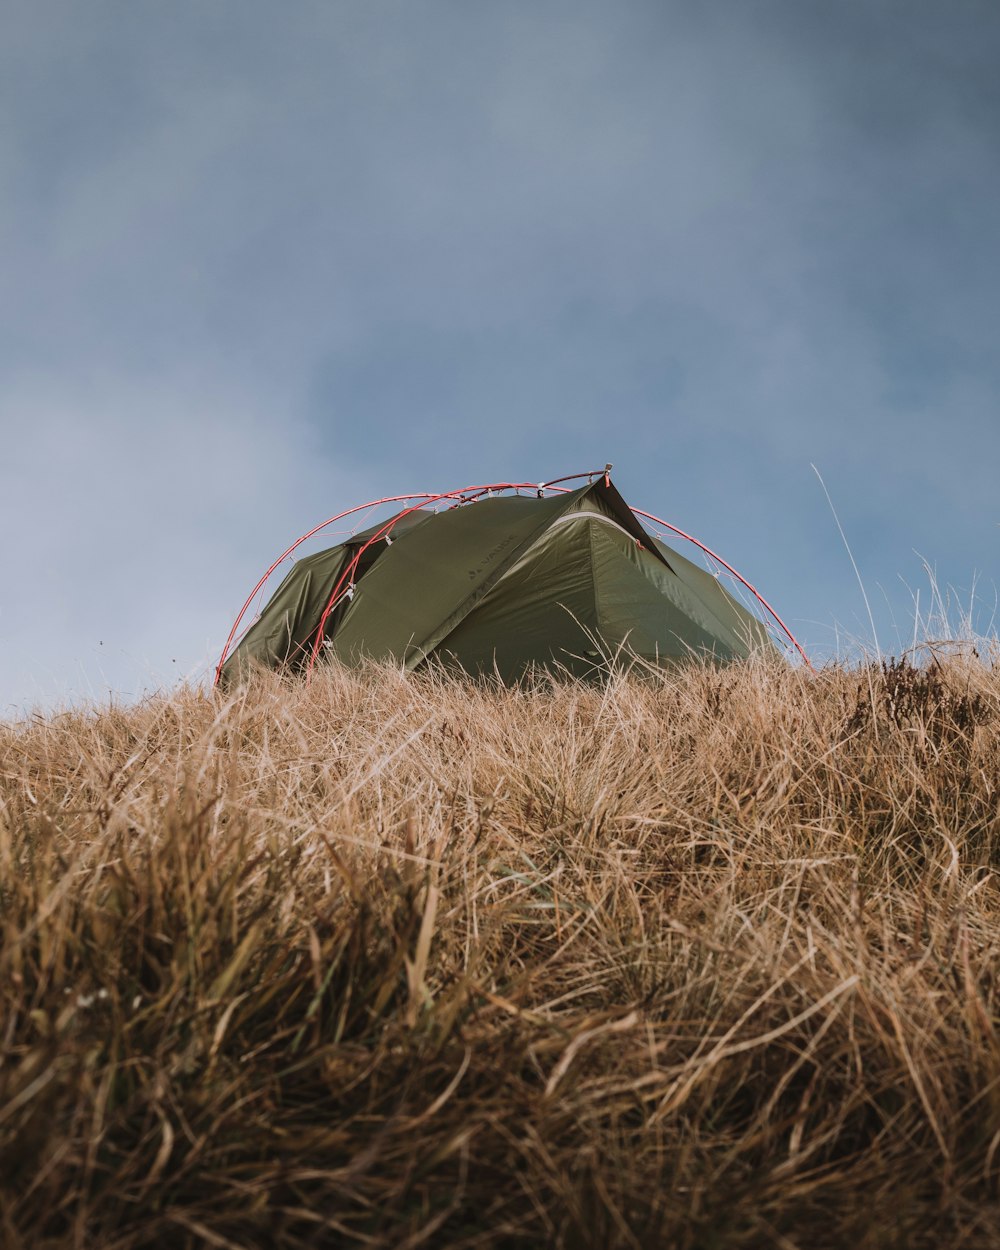 회색 하늘 아래 갈색 잔디밭에 있는 녹색과 빨간색 돔 텐트